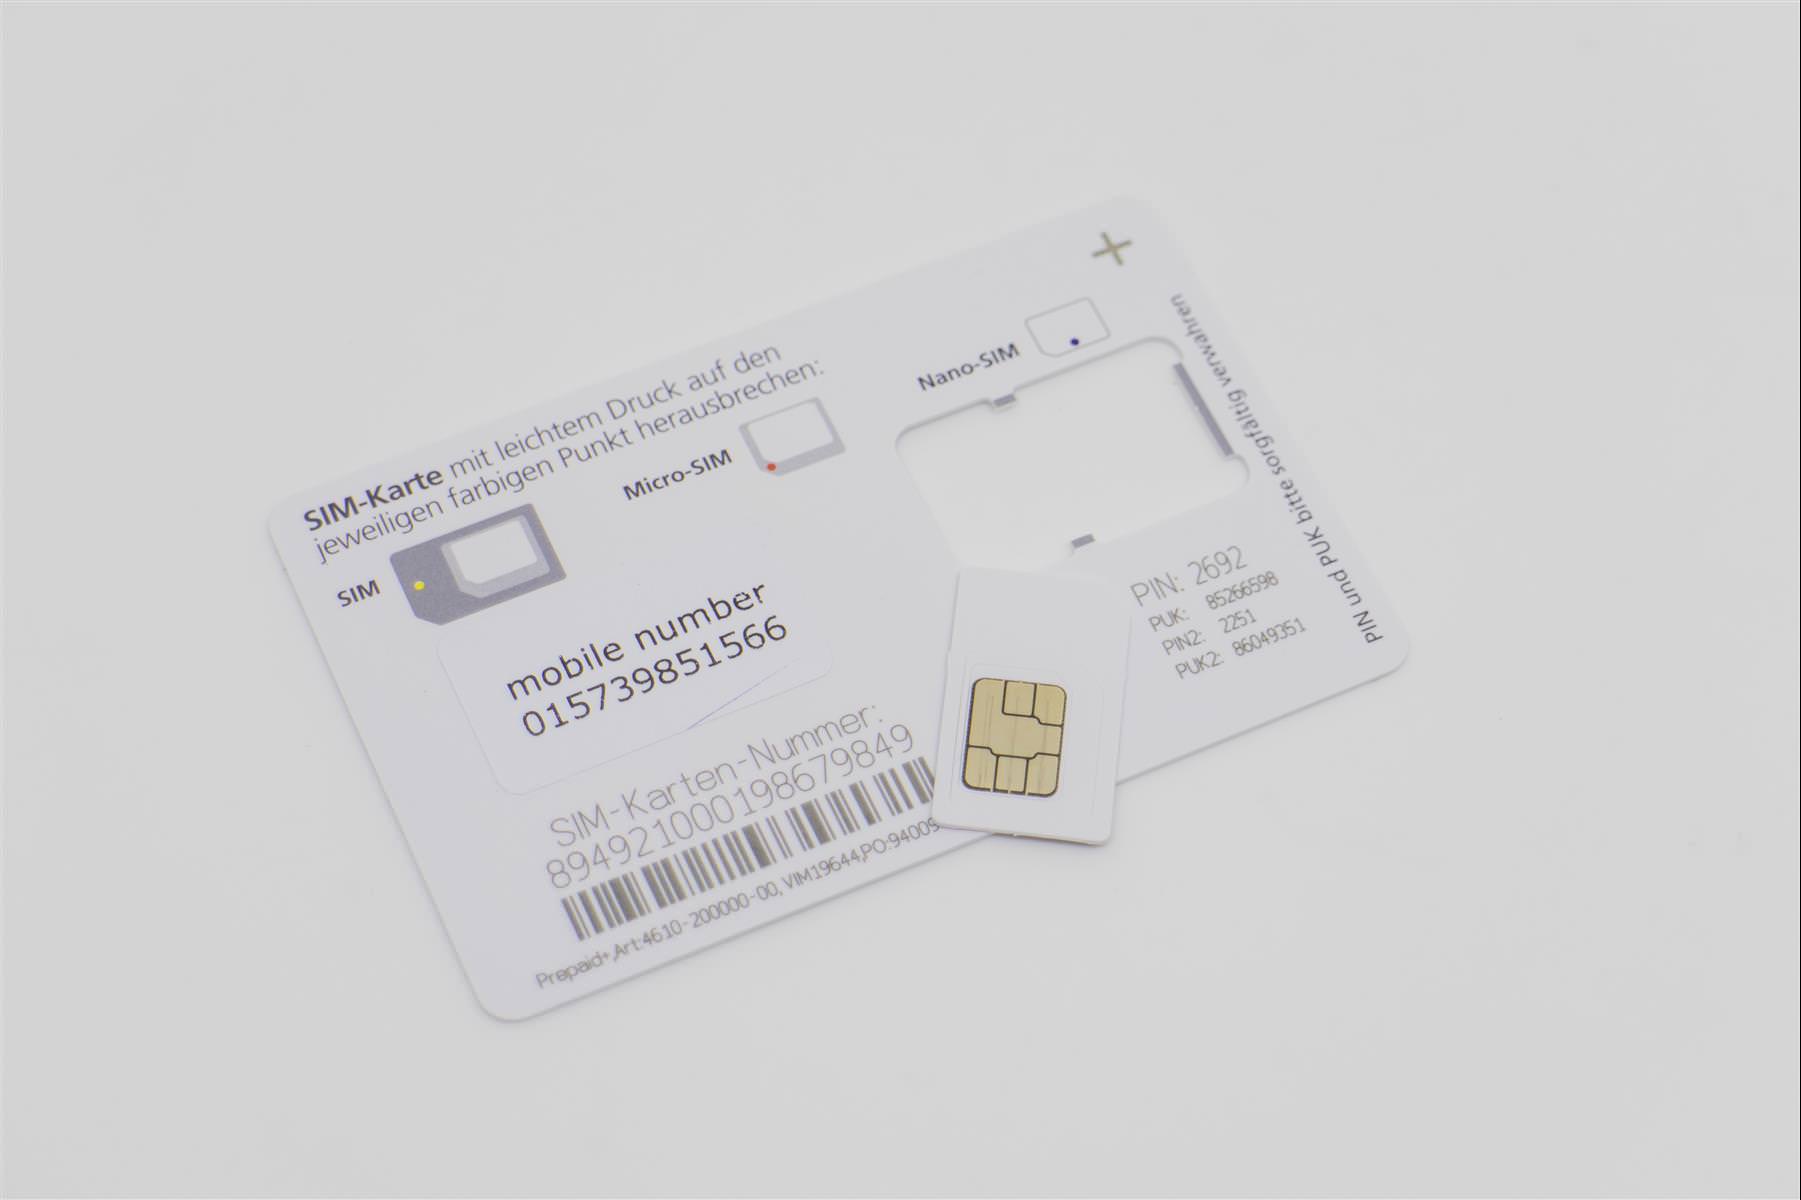 冰島上網 SIM 卡推薦